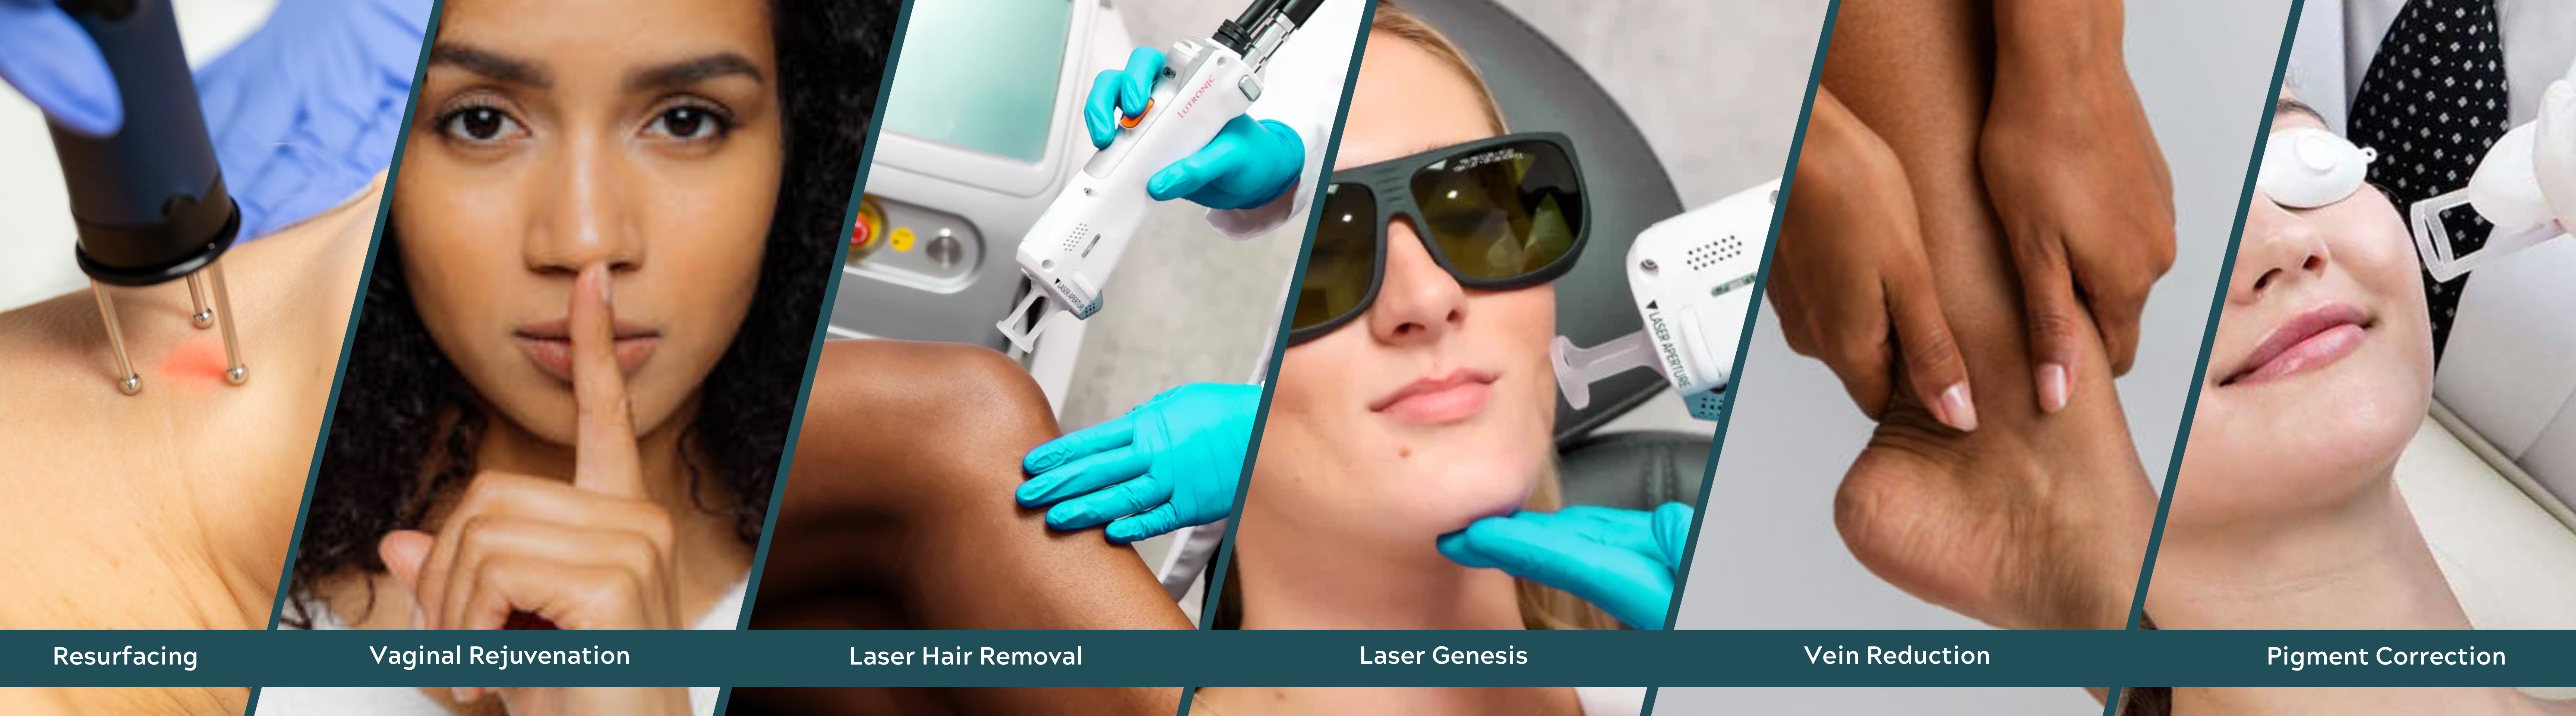 laser, Laser Services